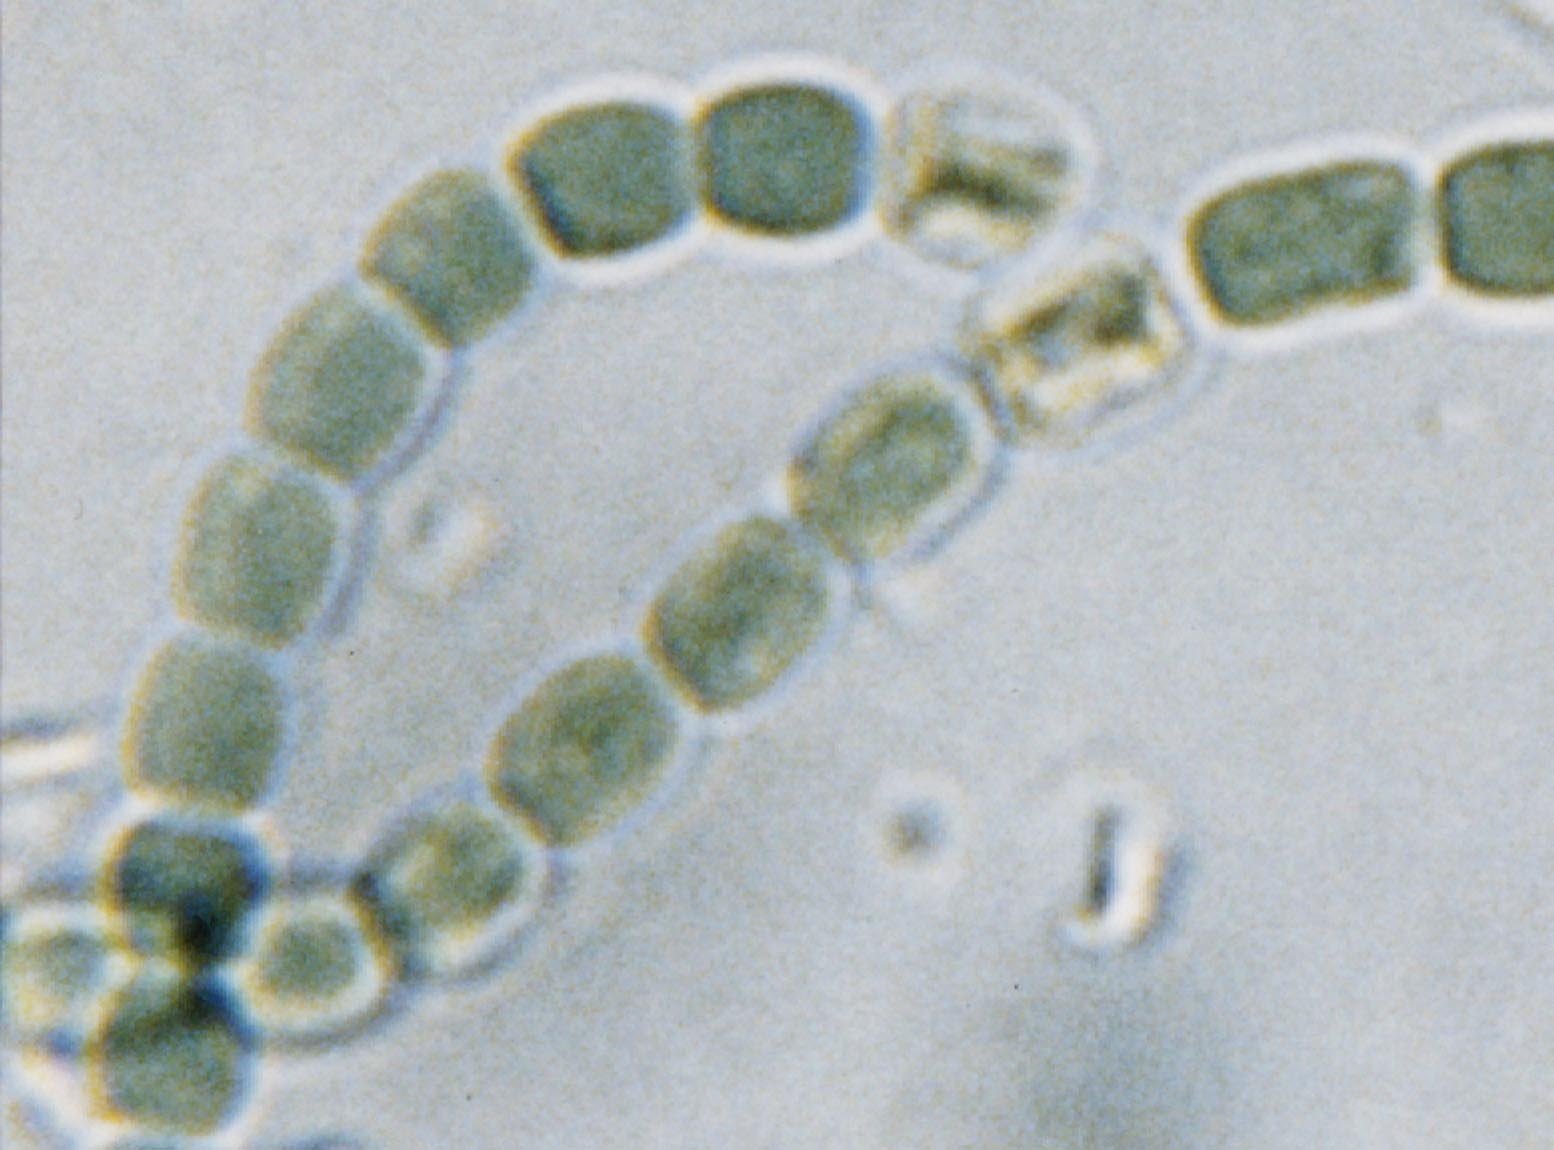 シアノバクテリア